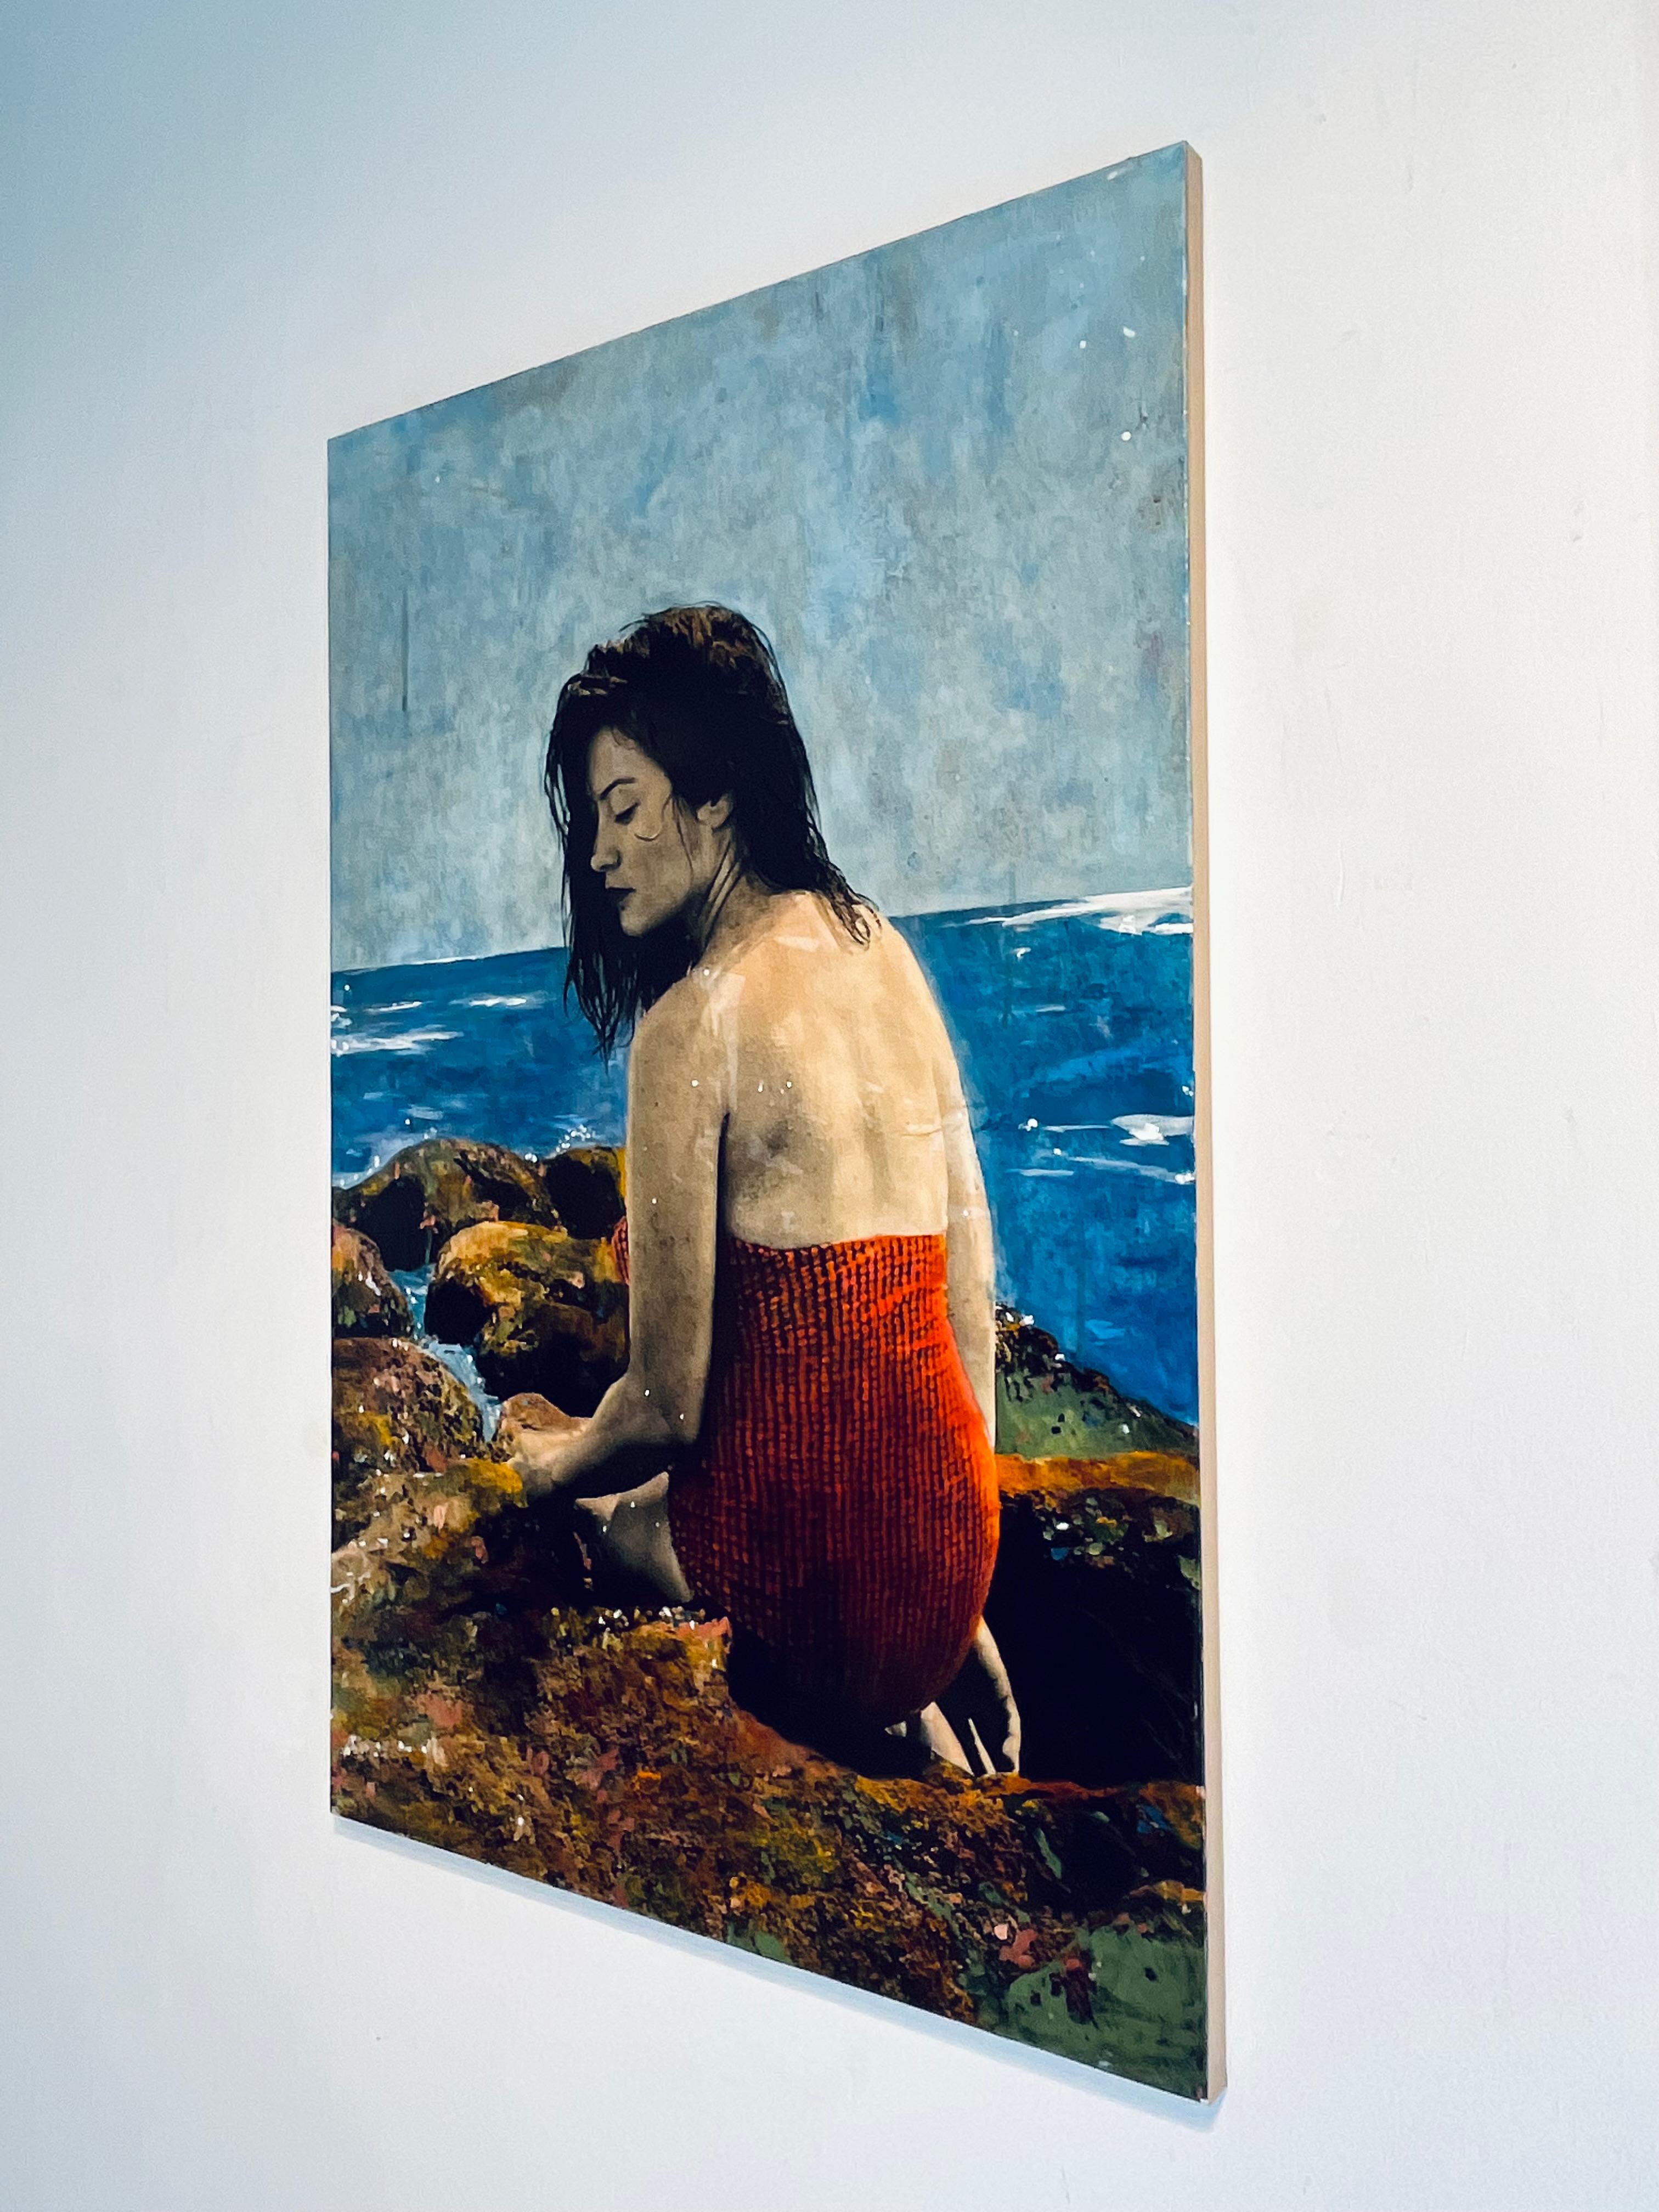 Sirene-originale moderne weibliche figurative-landschaftliche Malerei-zeitgenössisches Kunstwerk (Impressionismus), Painting, von Ayline Olukman